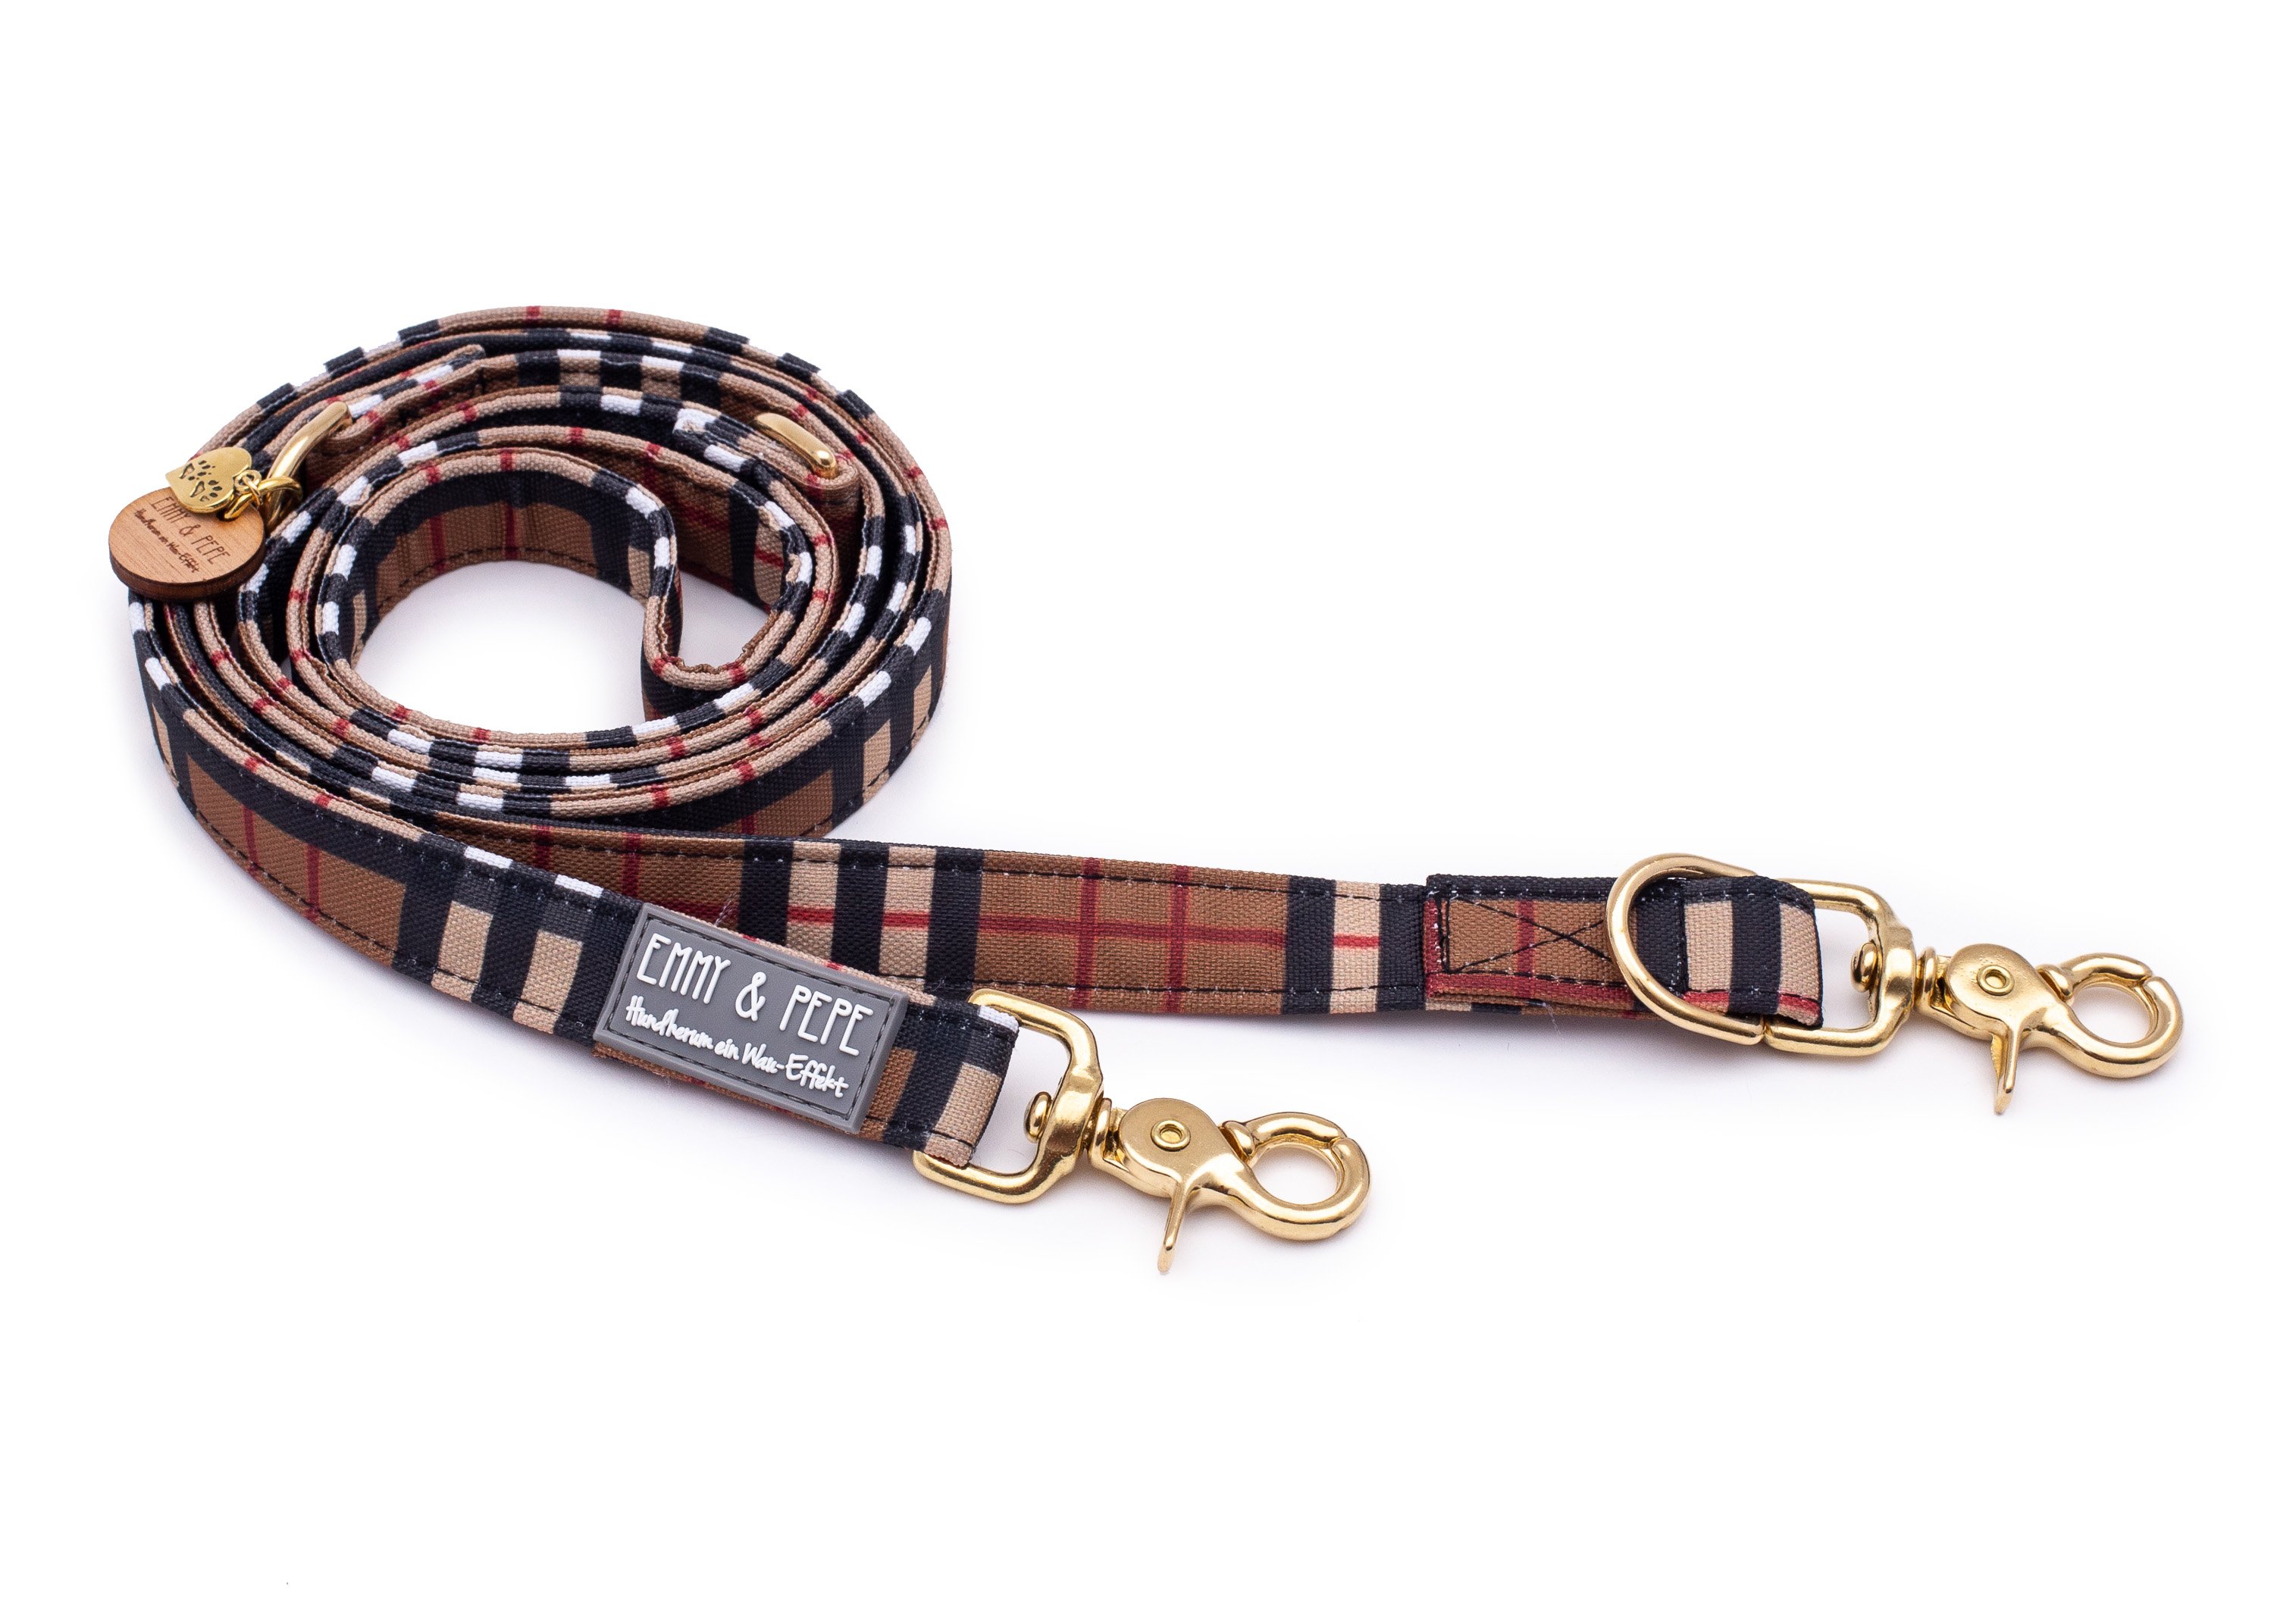 Sherlock dog leash